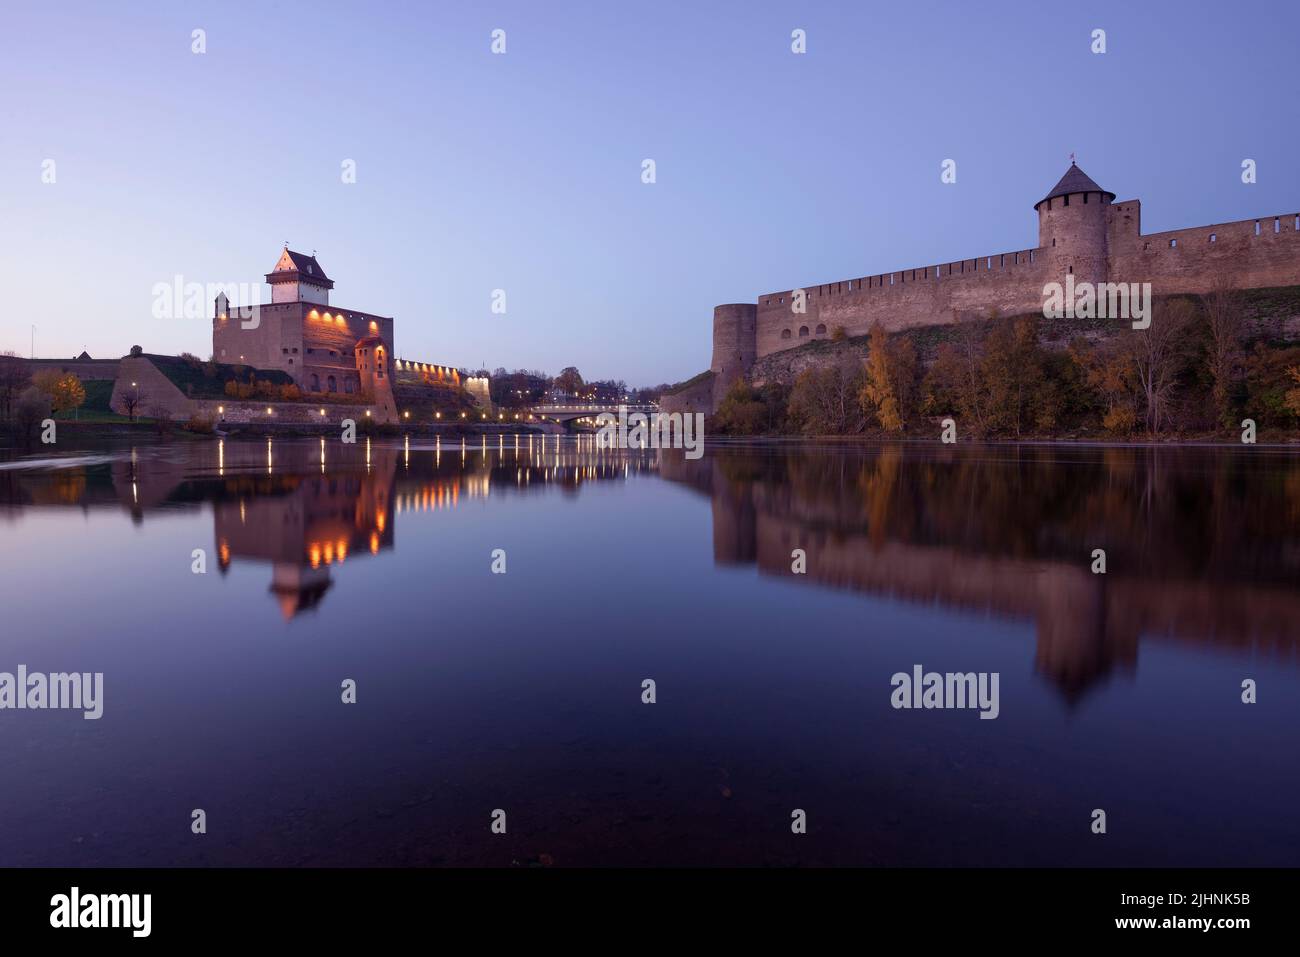 Tranquila noche de octubre en el río fronterizo de Narva. Frontera estonio-rusa Foto de stock